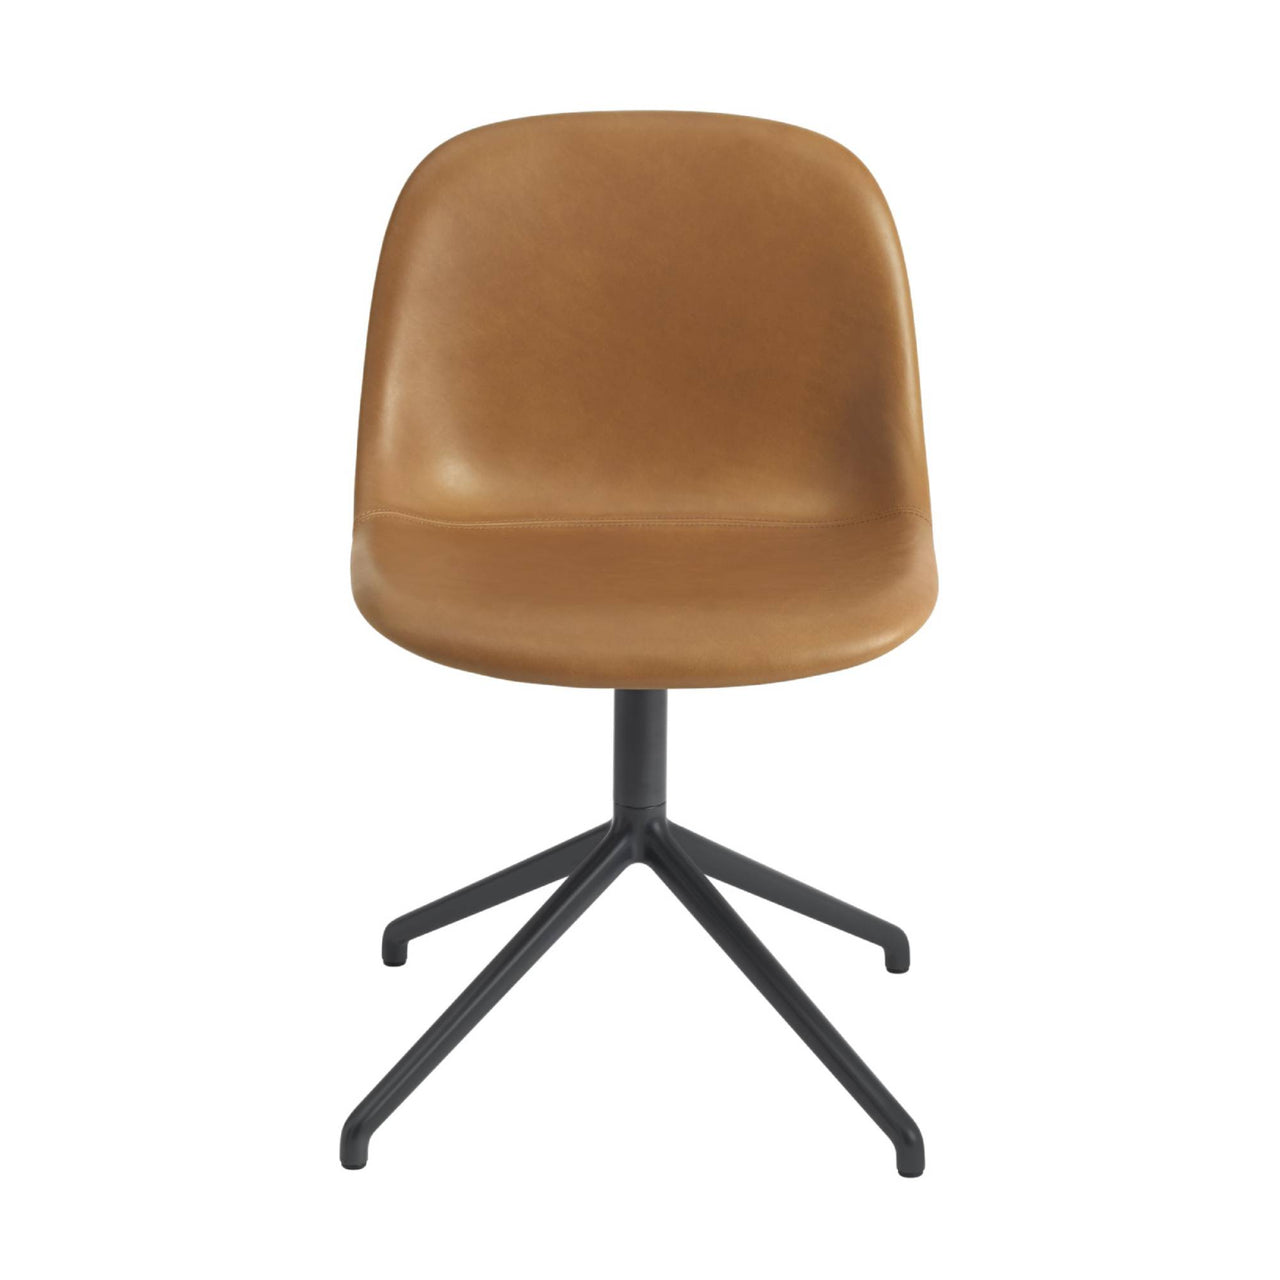 Fiber Side Chair: Swivel Base + Recycled Shell + Upholstered + Black